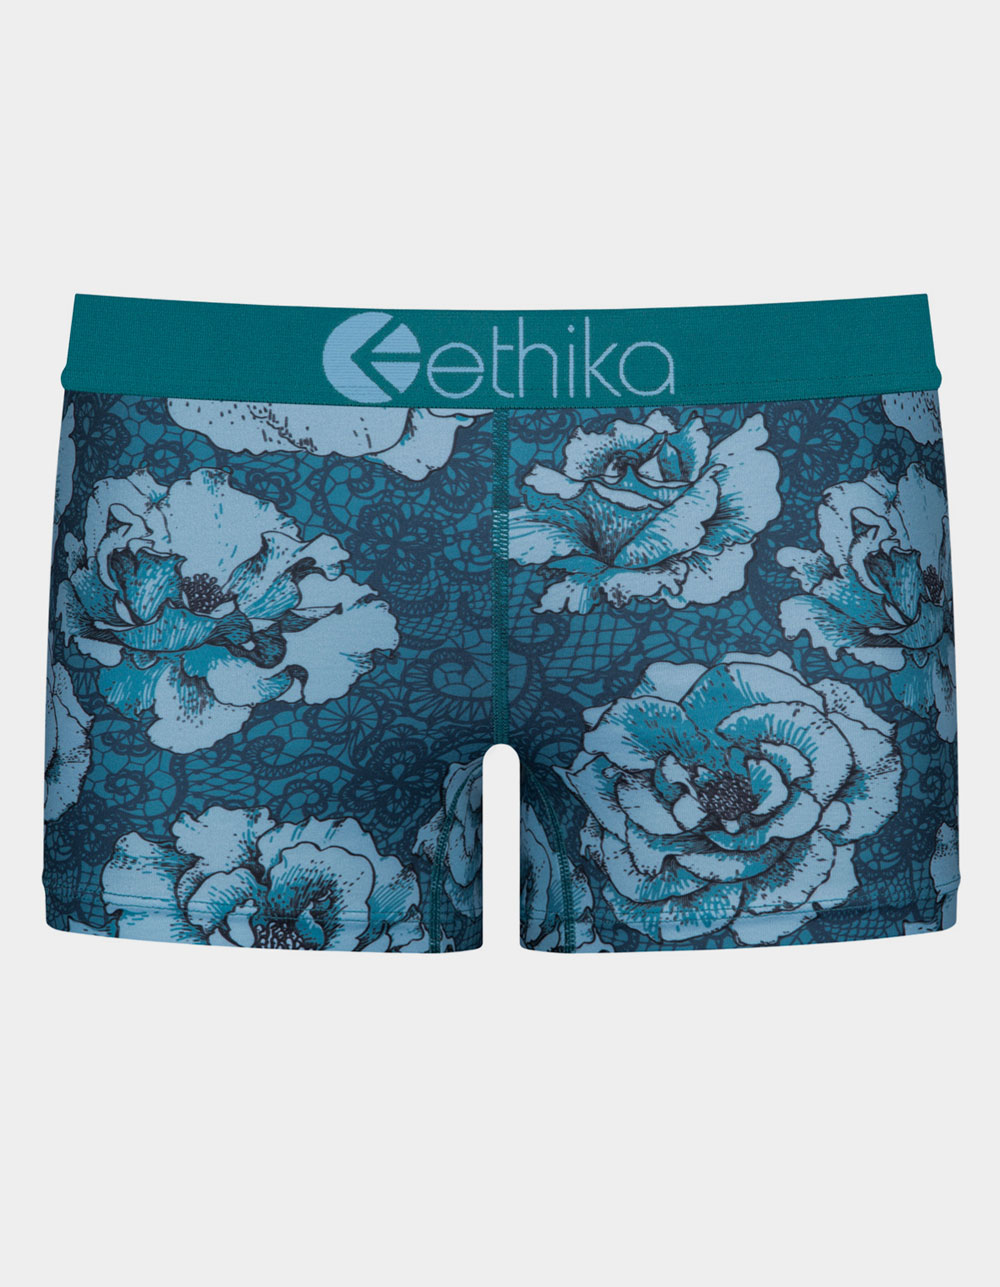  Women's Boy Short Panties - Ethika / Women's Boy Short